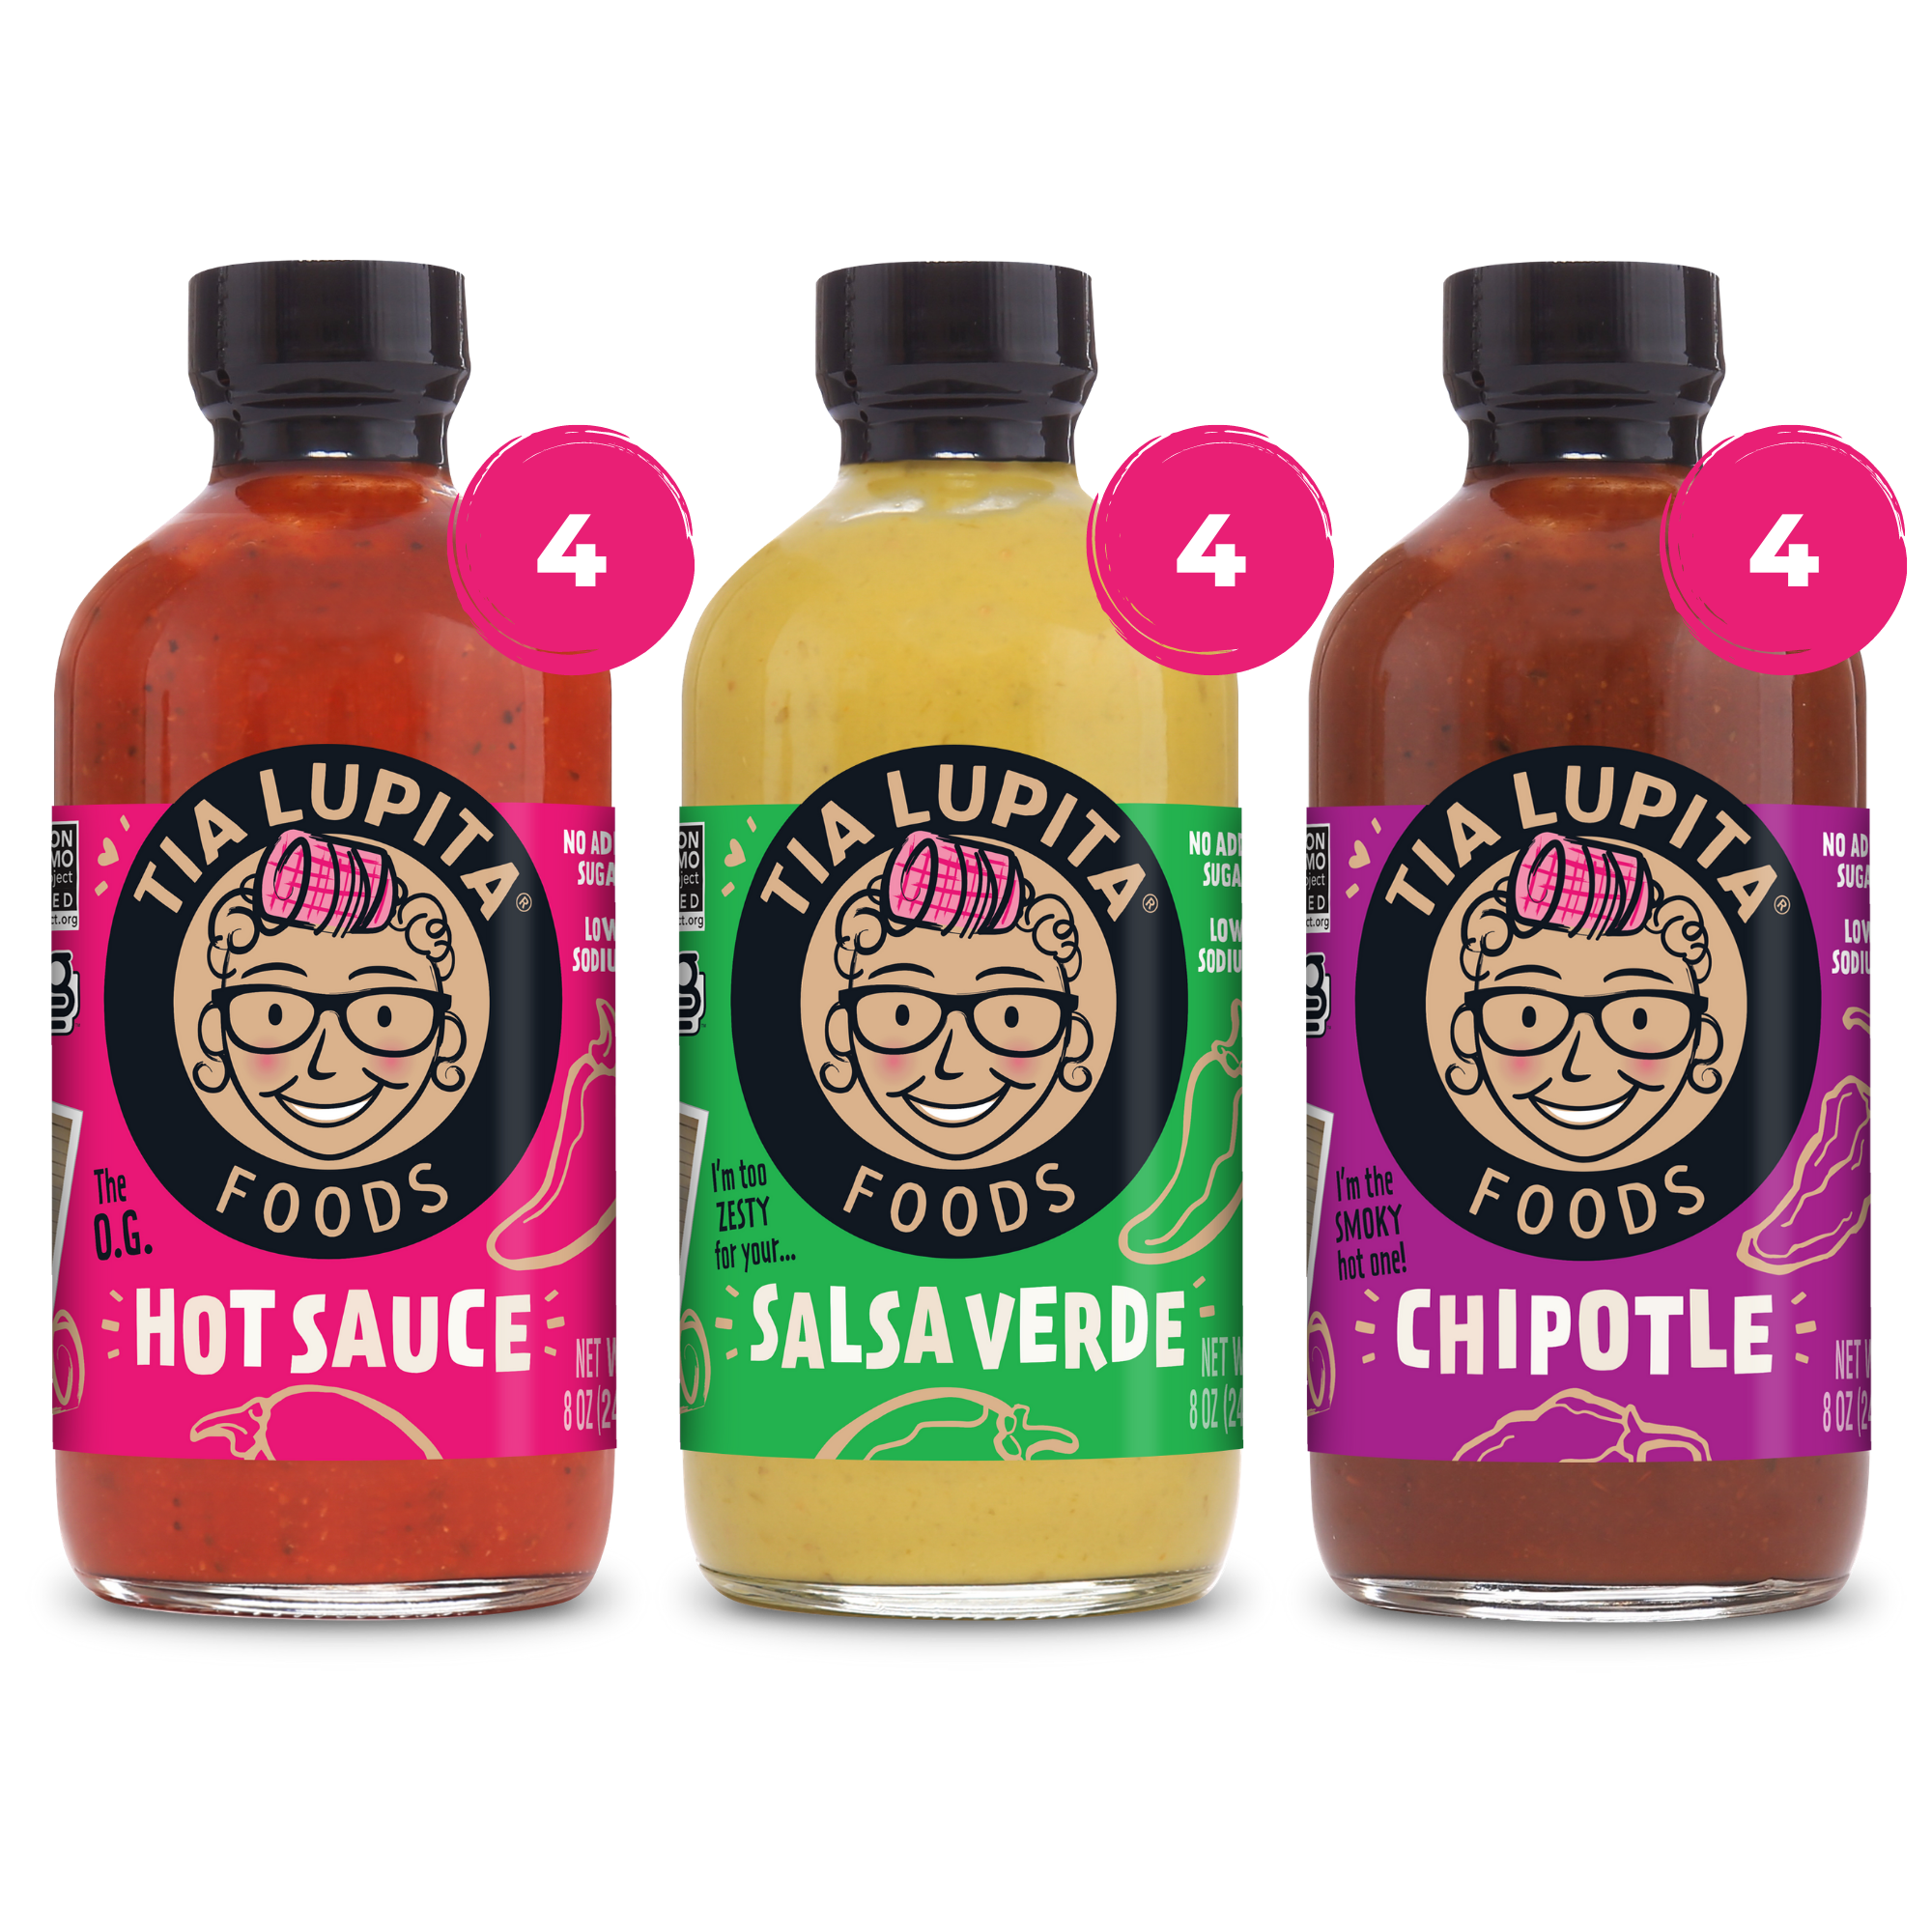 Case of 12 Bottles - 4 Hot Sauce, 4 Salsa Verde, 4 Chipotle Image